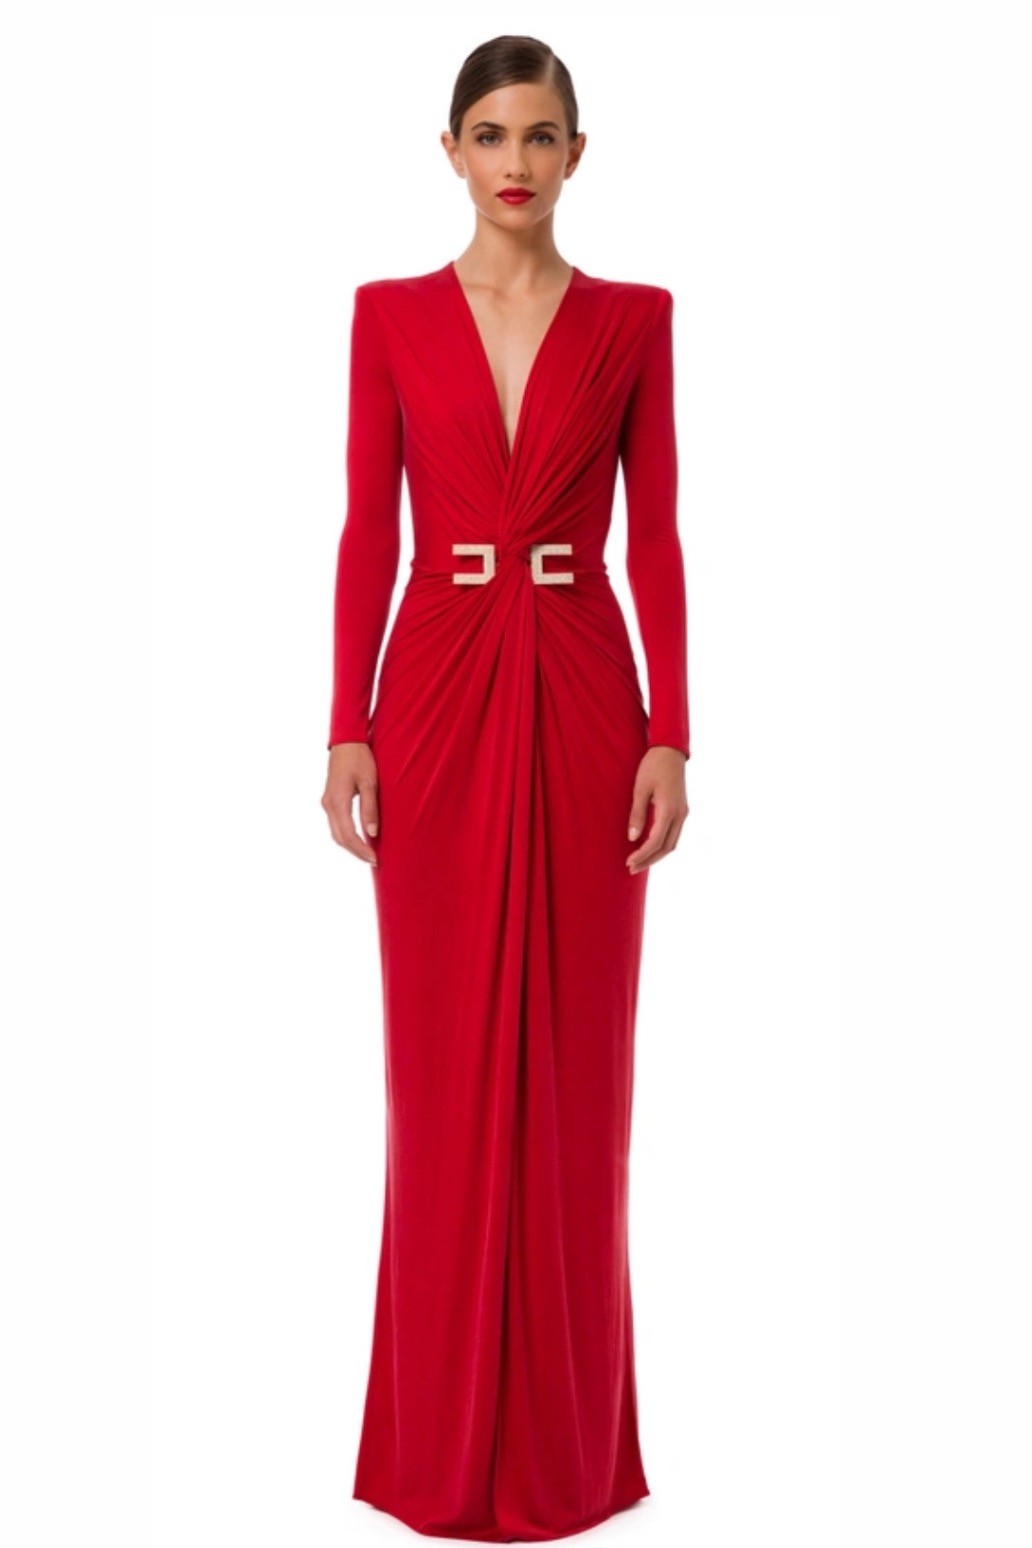  إليزابيتا فرانشي - فستان سجادة حمراء بأكمام طويلة وأحجار الراين MAXI C - Red Velvet